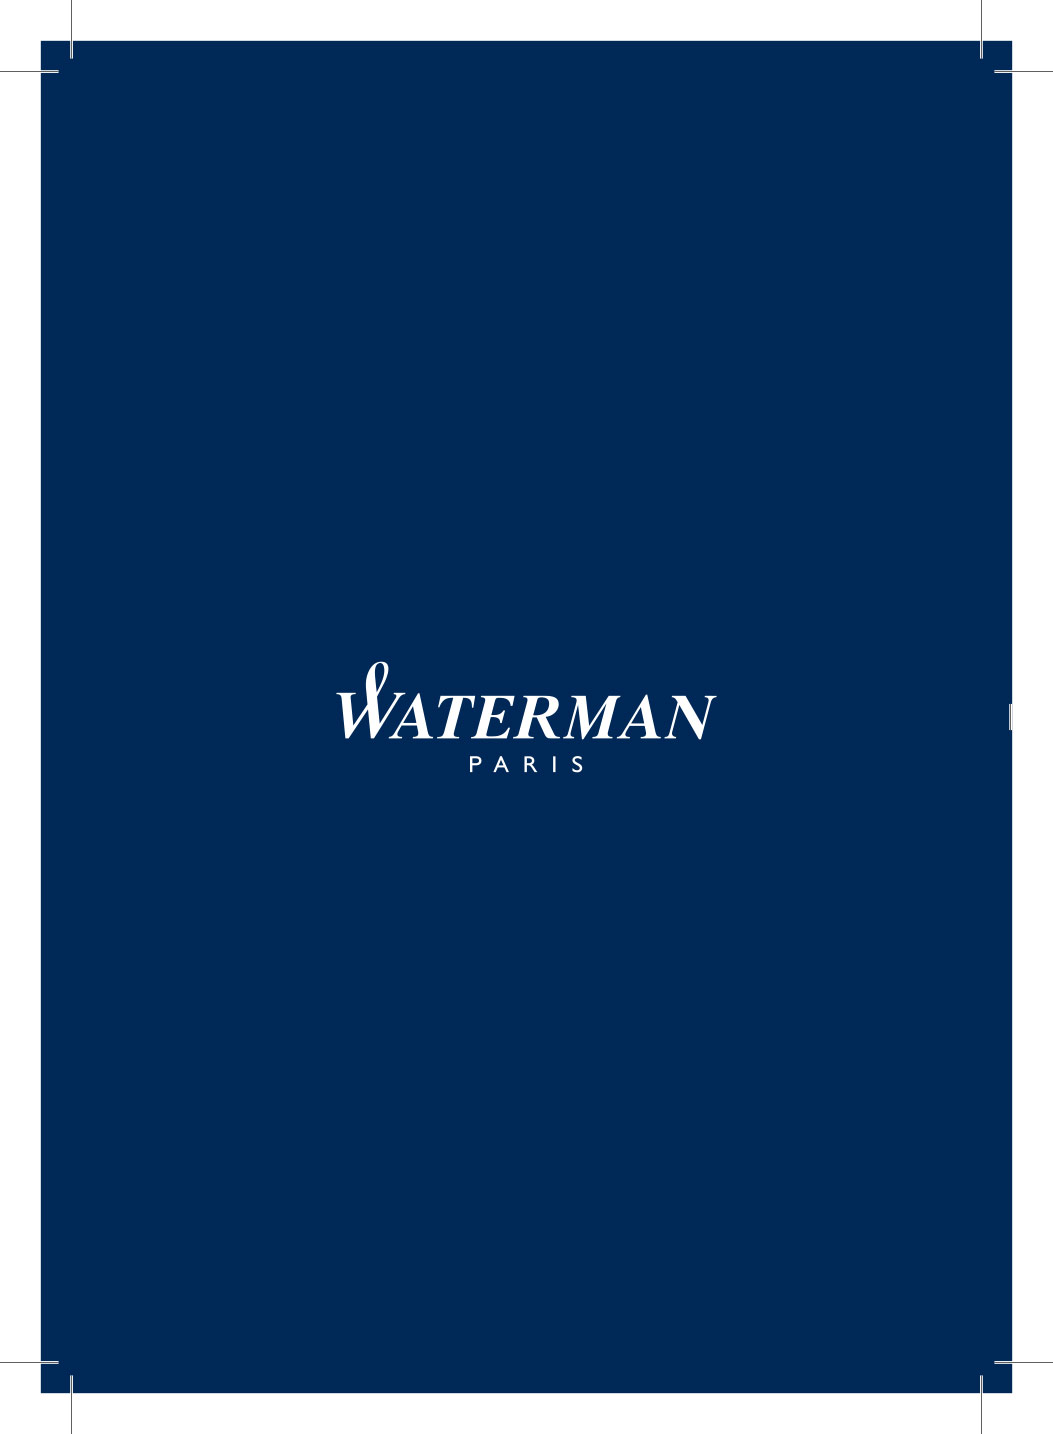 Waterman 2018 Catalogue